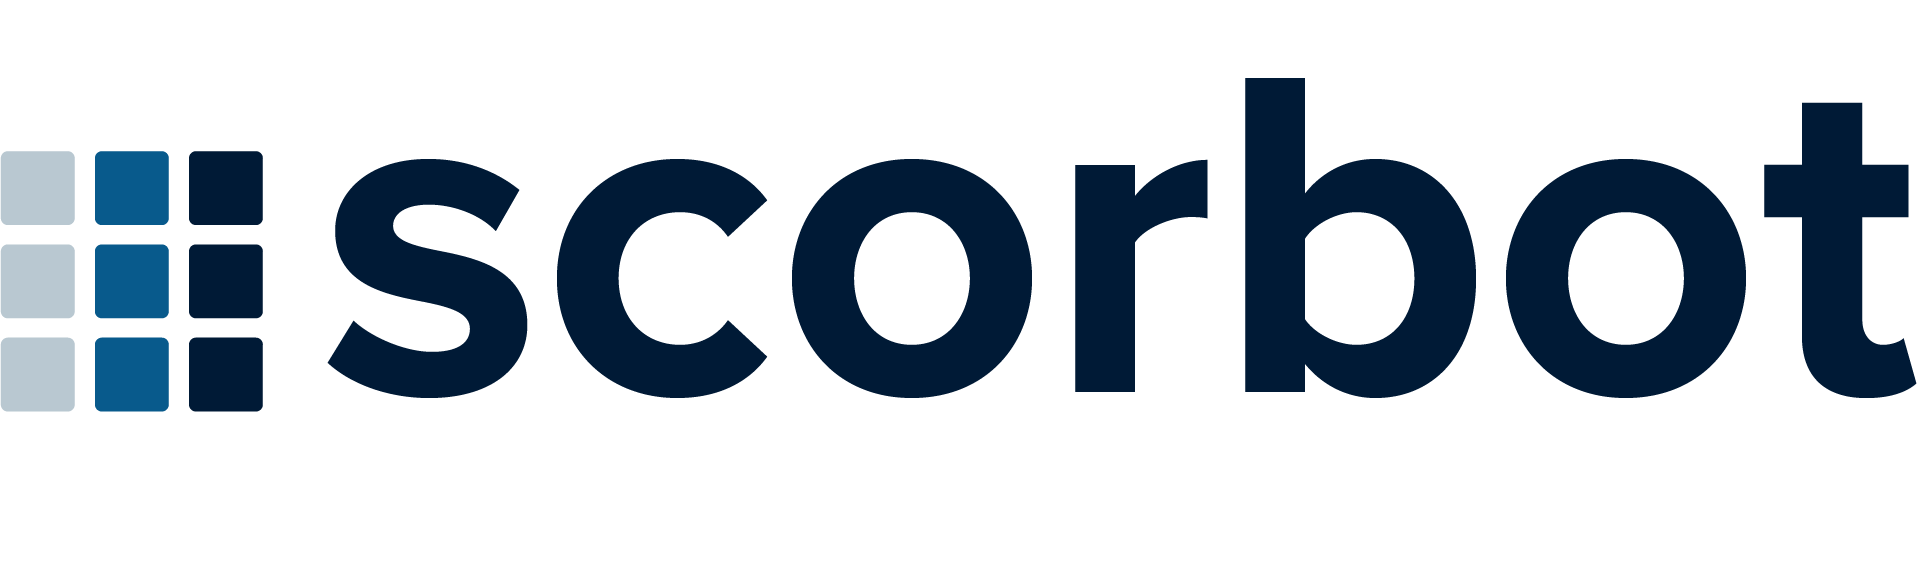 Scorbot-logo-dark